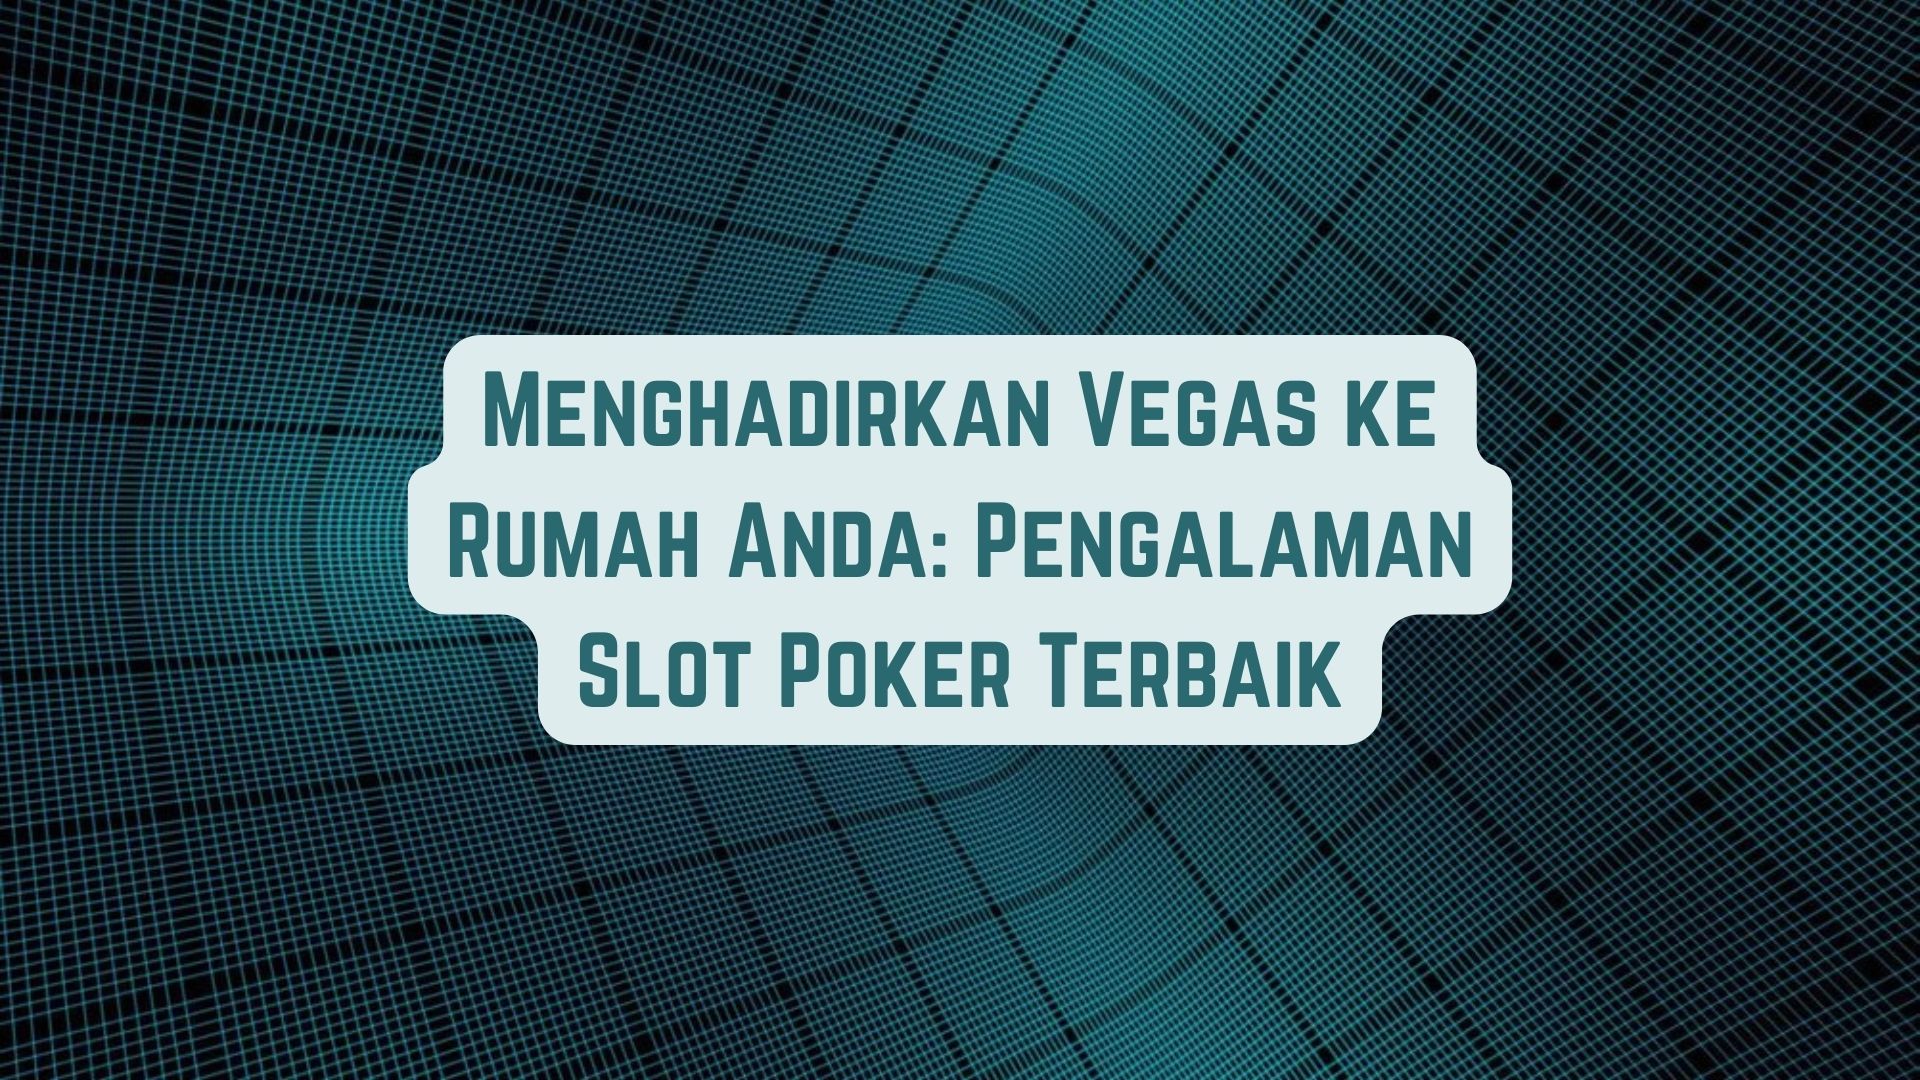 Menghadirkan Vegas ke Rumah Anda: Pengalaman Game Poker Terbaik